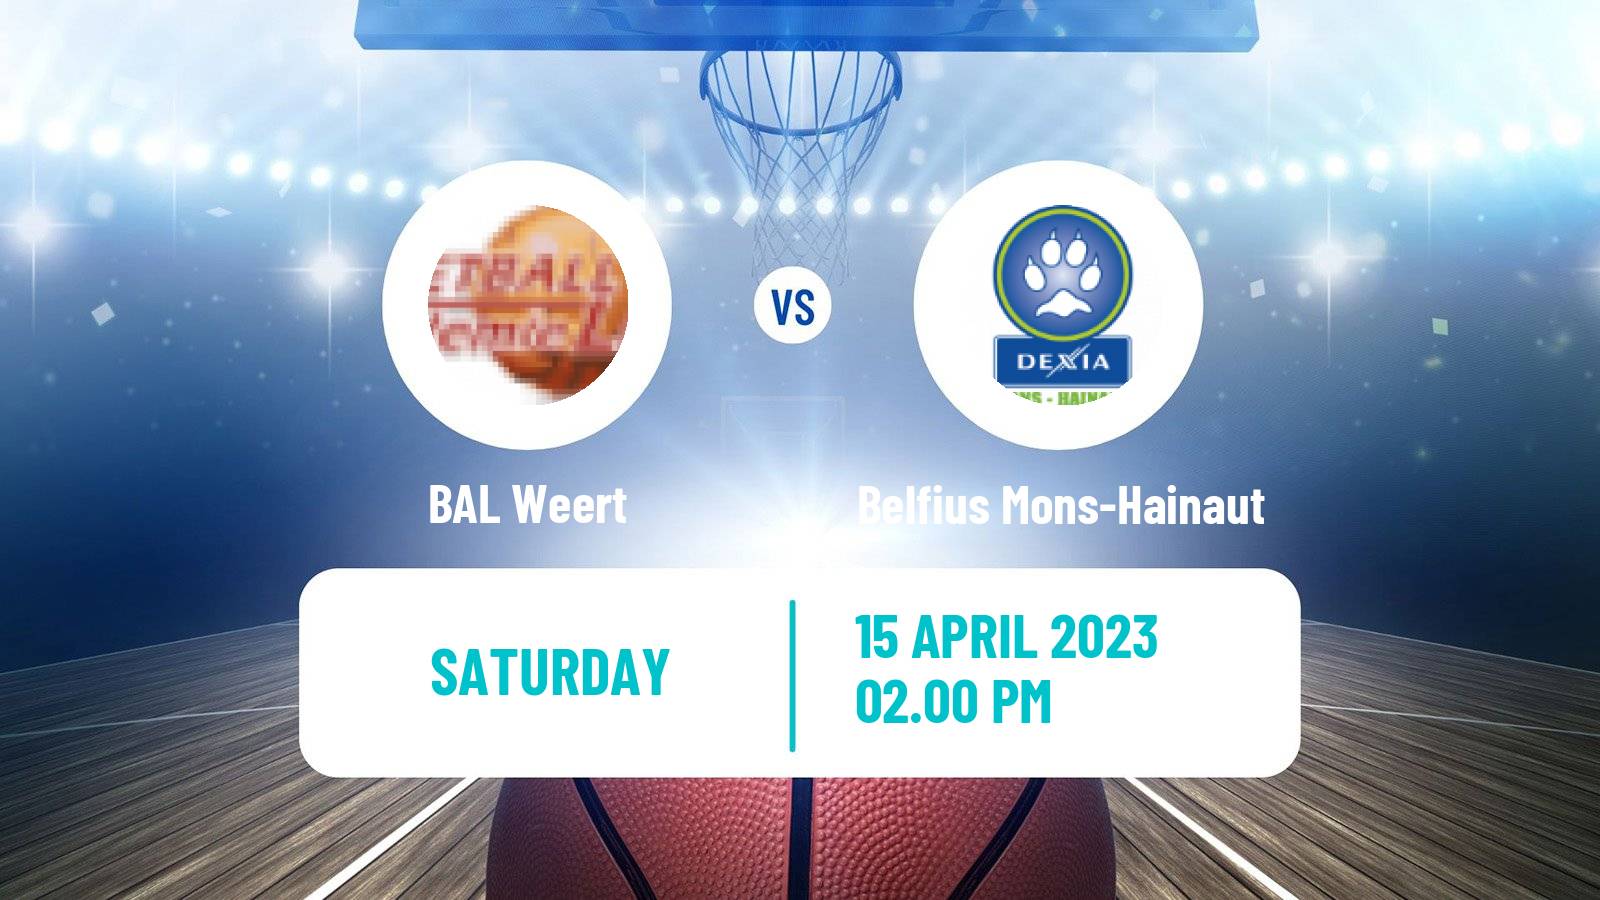 Basketball BNXT League BAL Weert - Belfius Mons-Hainaut